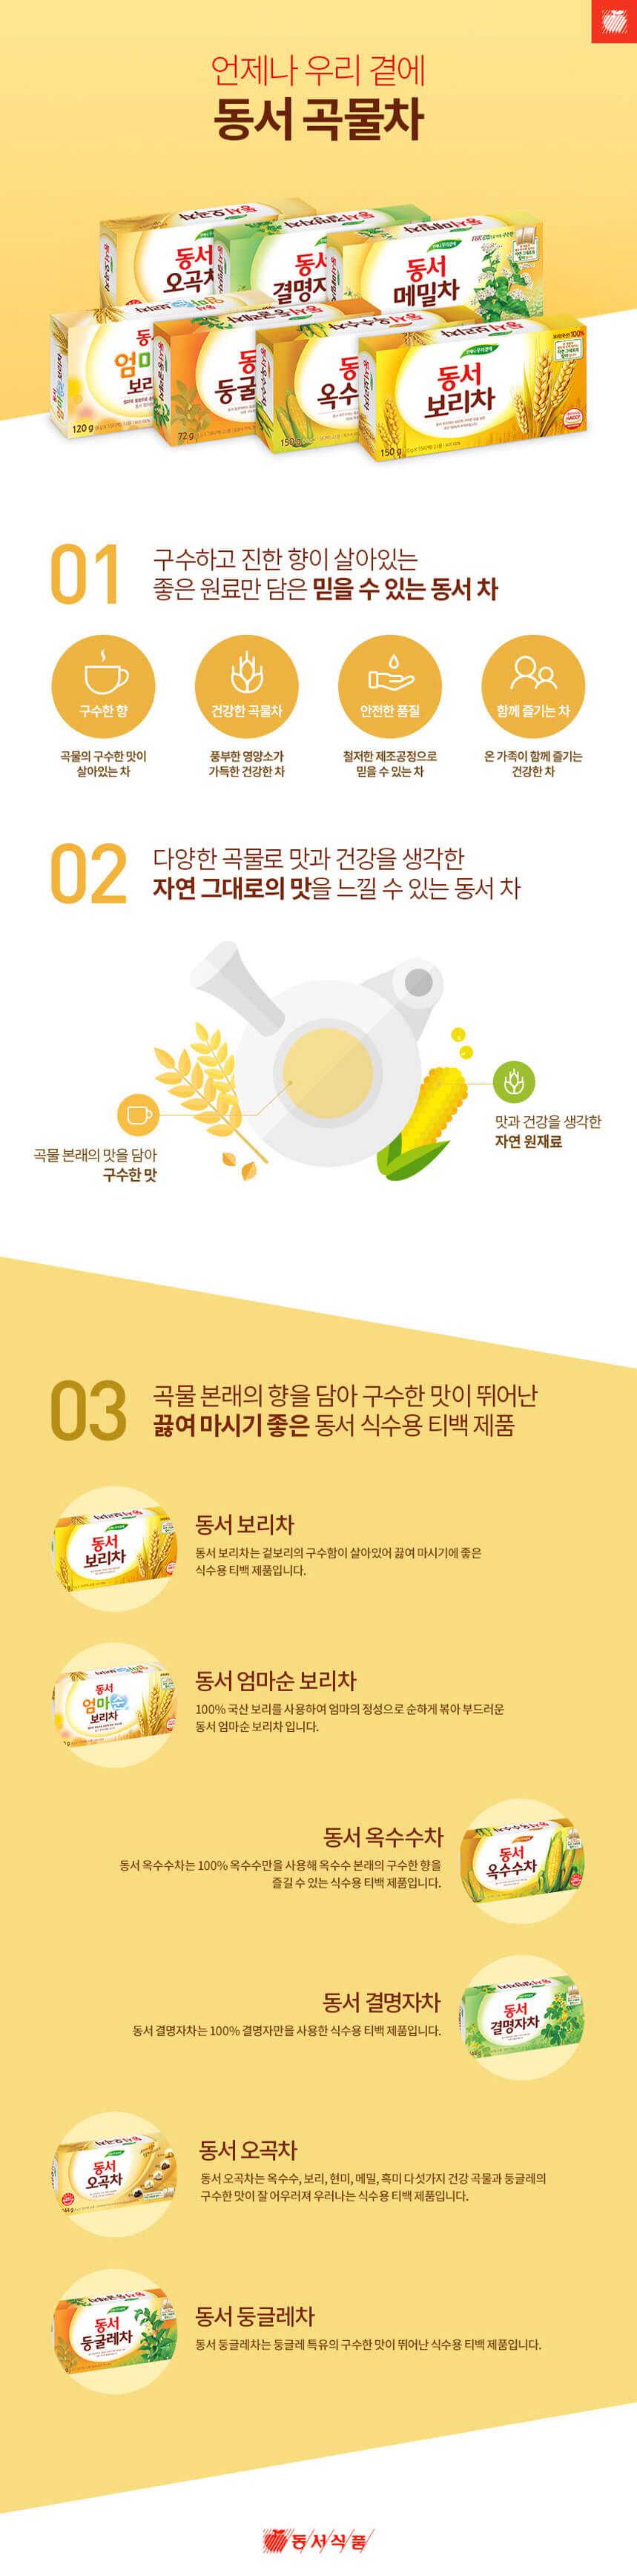 韓國食品-[Dongsuh] 100% Corn Tea 10g*15t